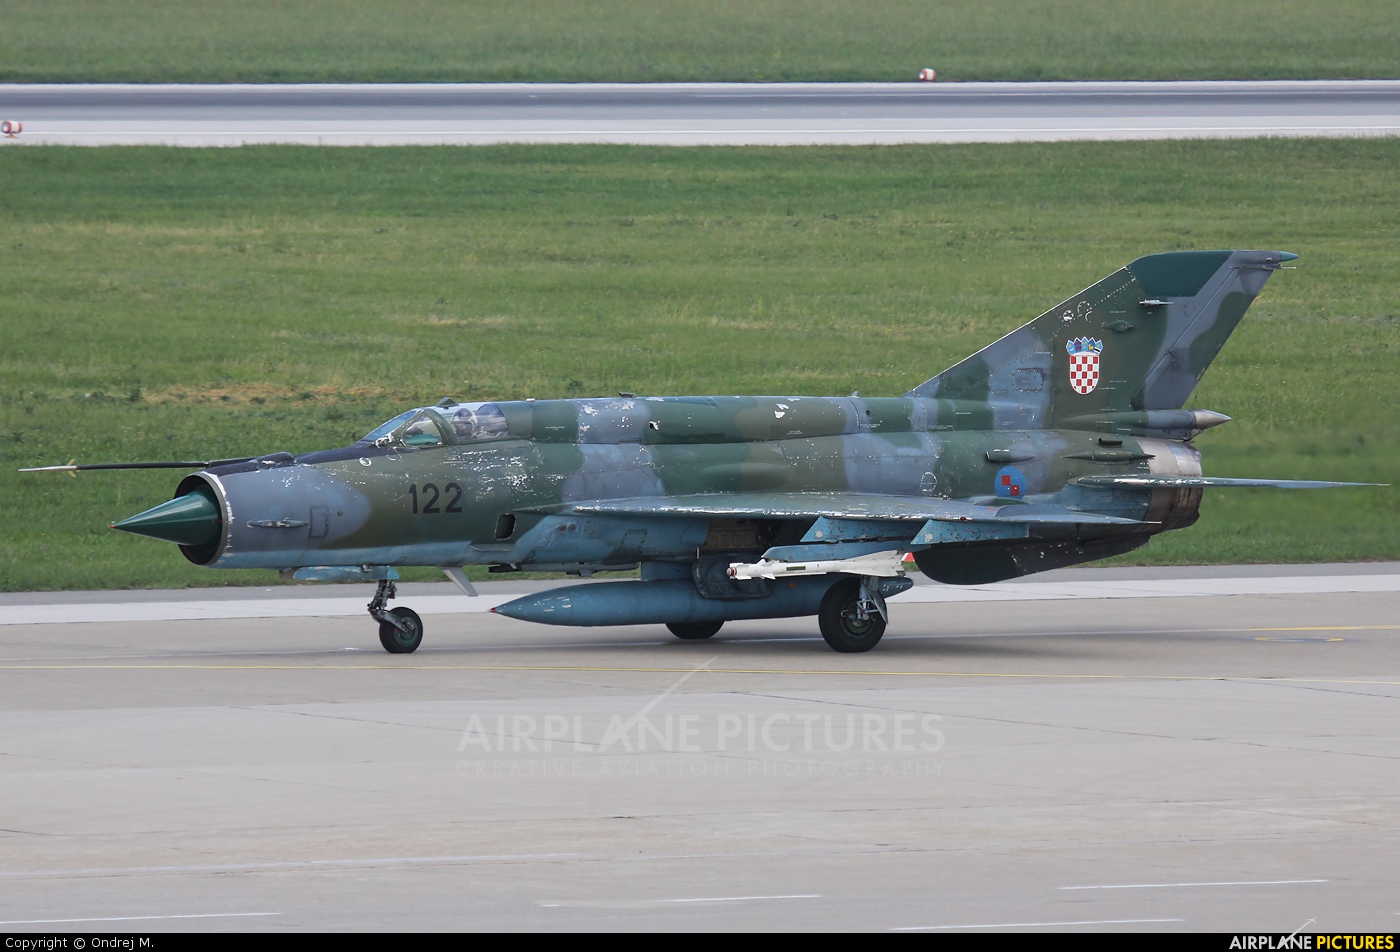 Croatia - Air Force 122 aircraft at Zagreb